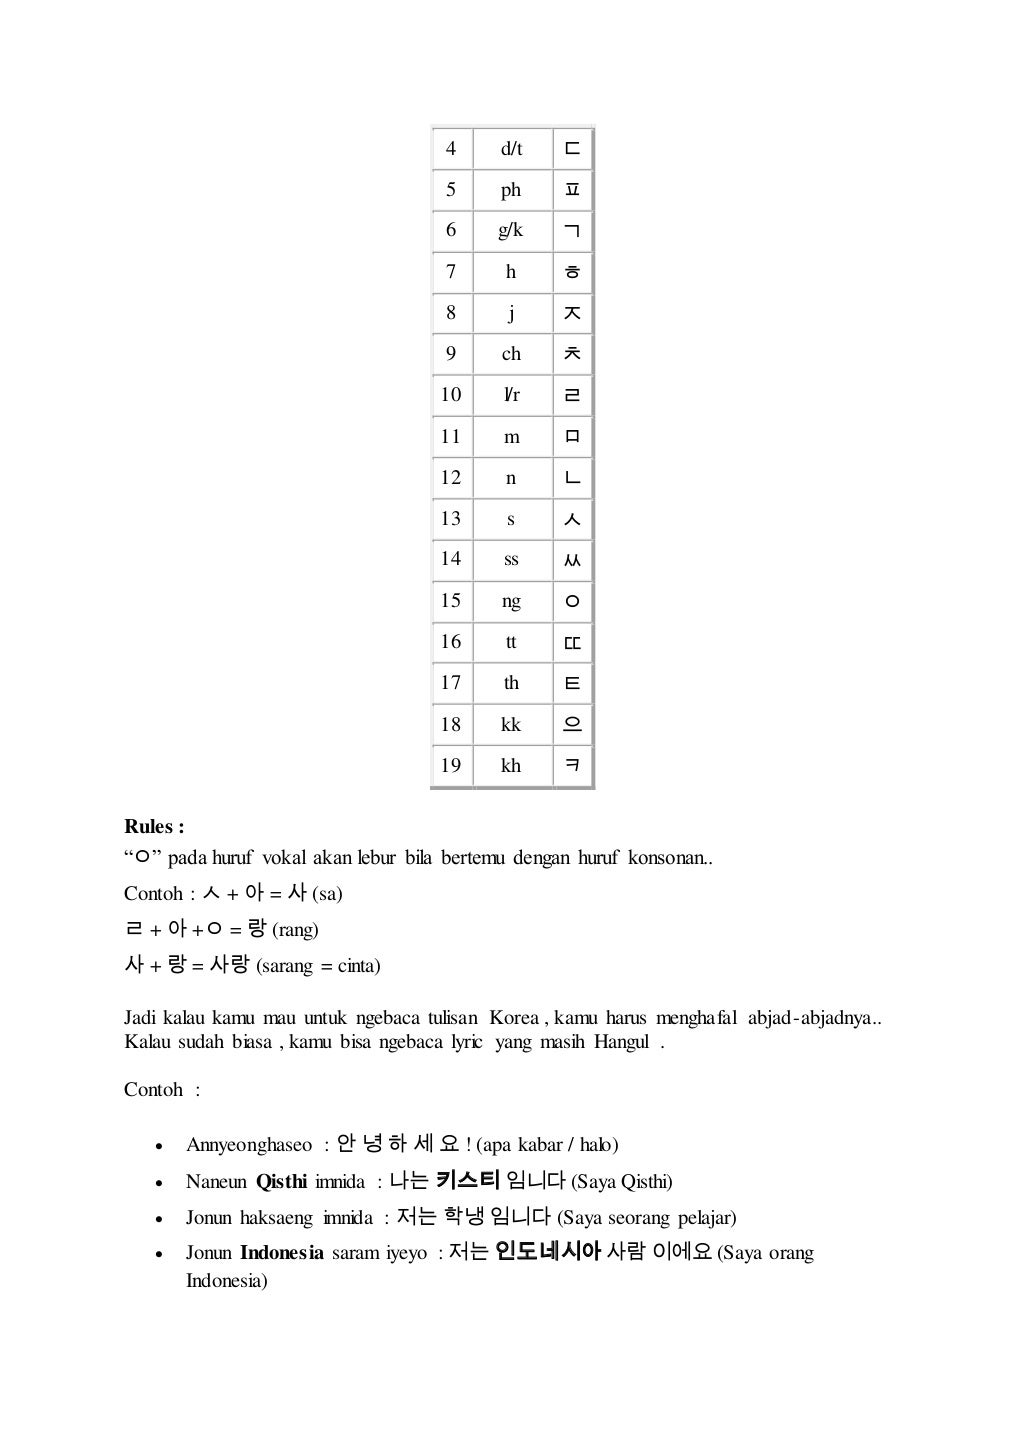 Cara praktis  mempelajari tulisan  korea